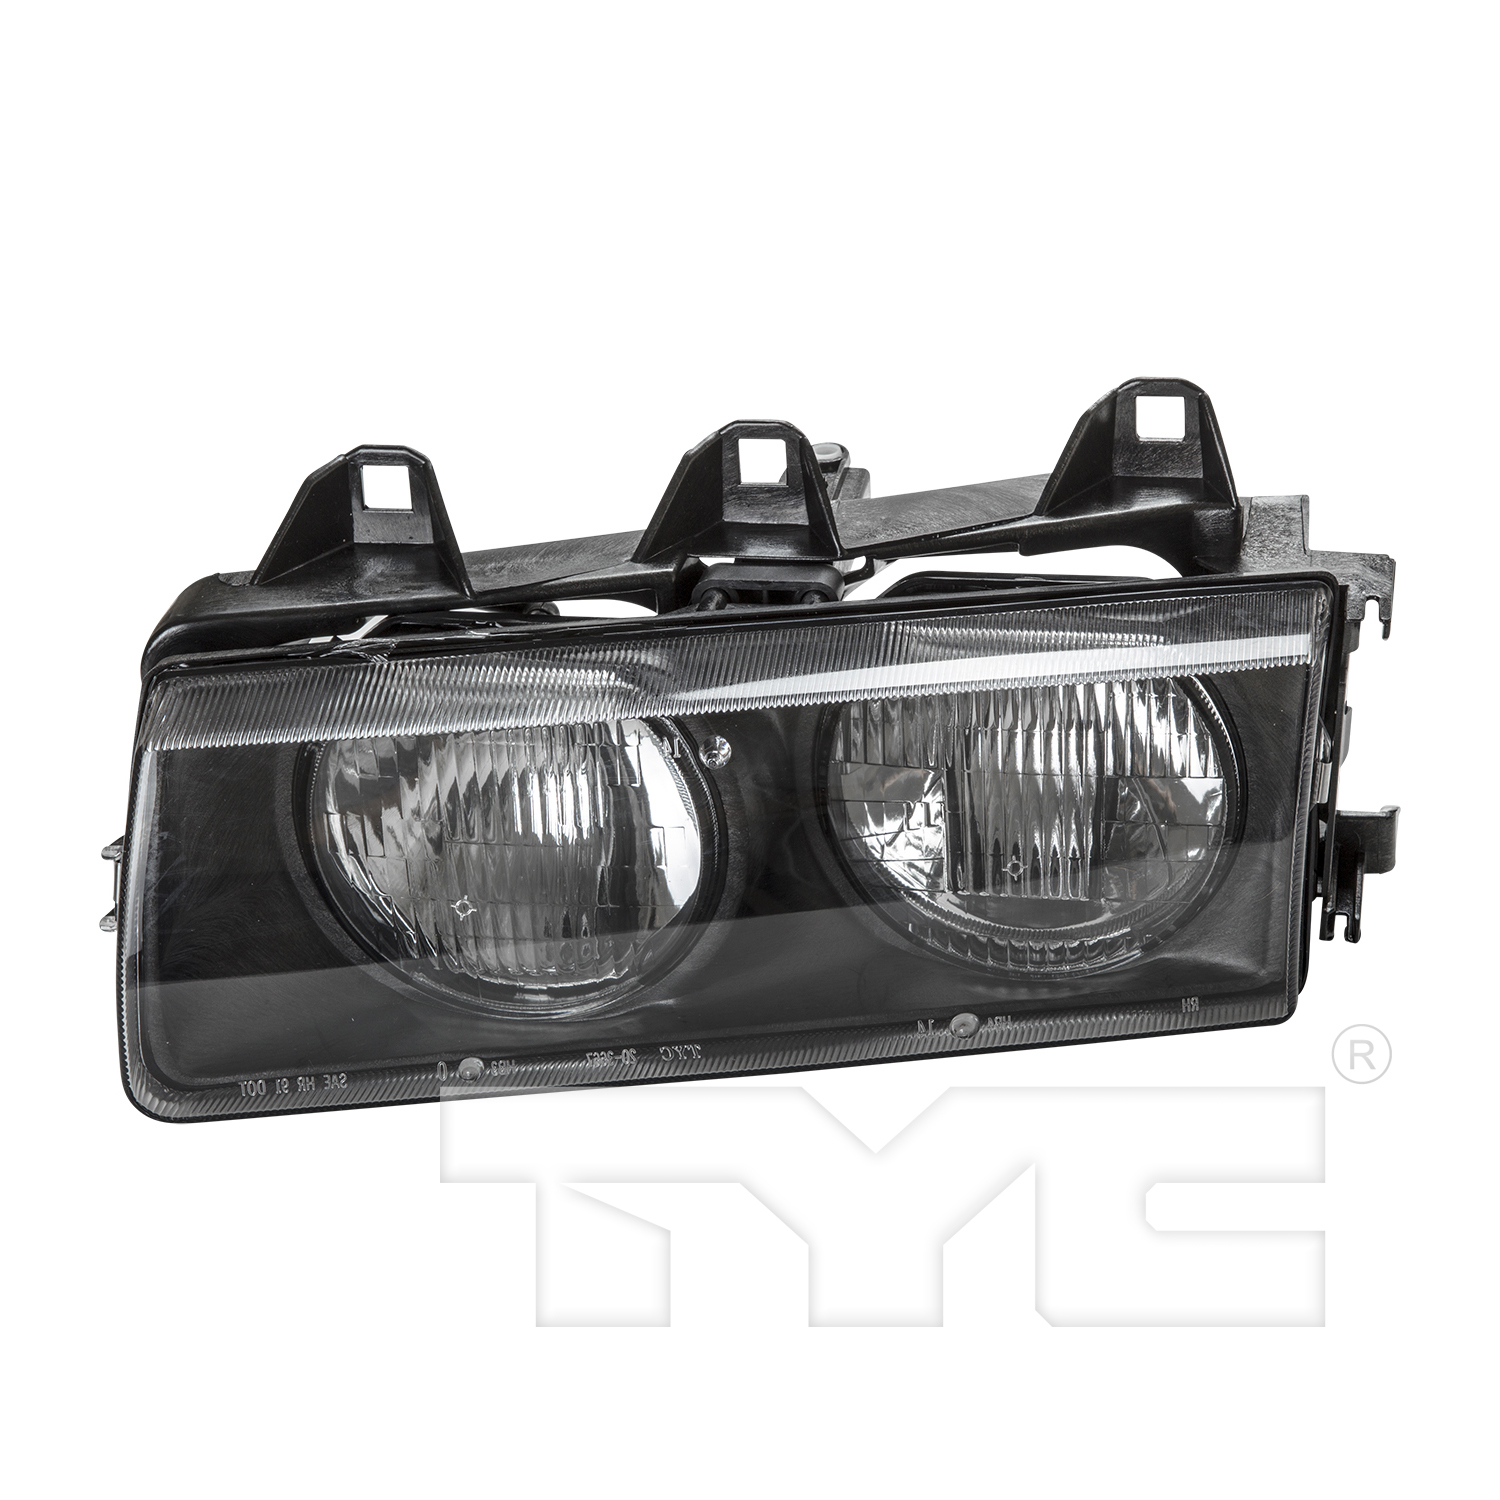 Aftermarket HEADLIGHTS for BMW - 323I, 323i,98-99,LT Headlamp assy composite